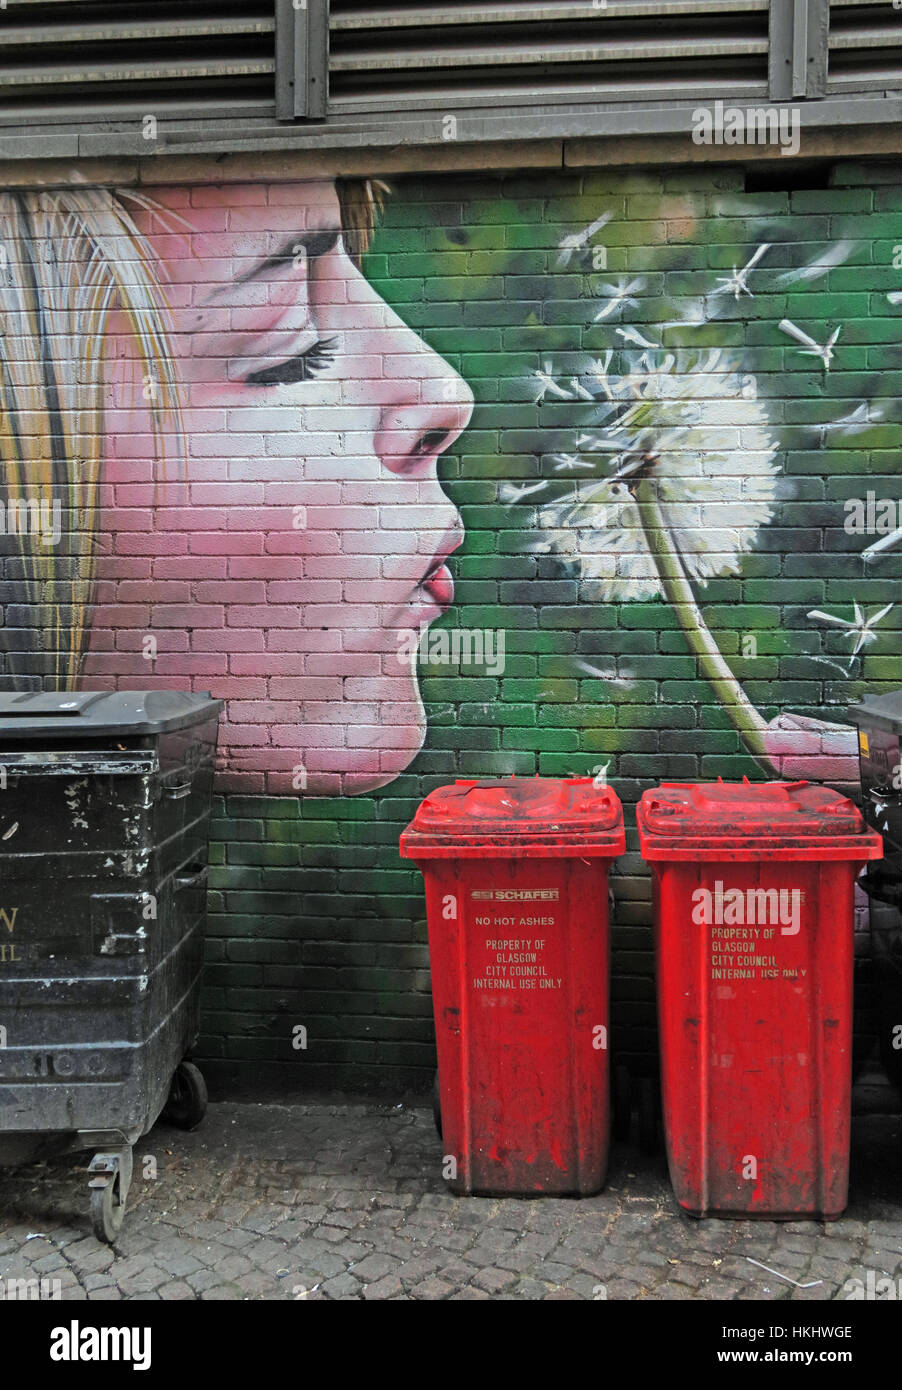 Femme blonde soufflant les graines d'une horloge pissenlit, au-dessus des poubelles, Glasgow, Écosse, Royaume-Uni Banque D'Images